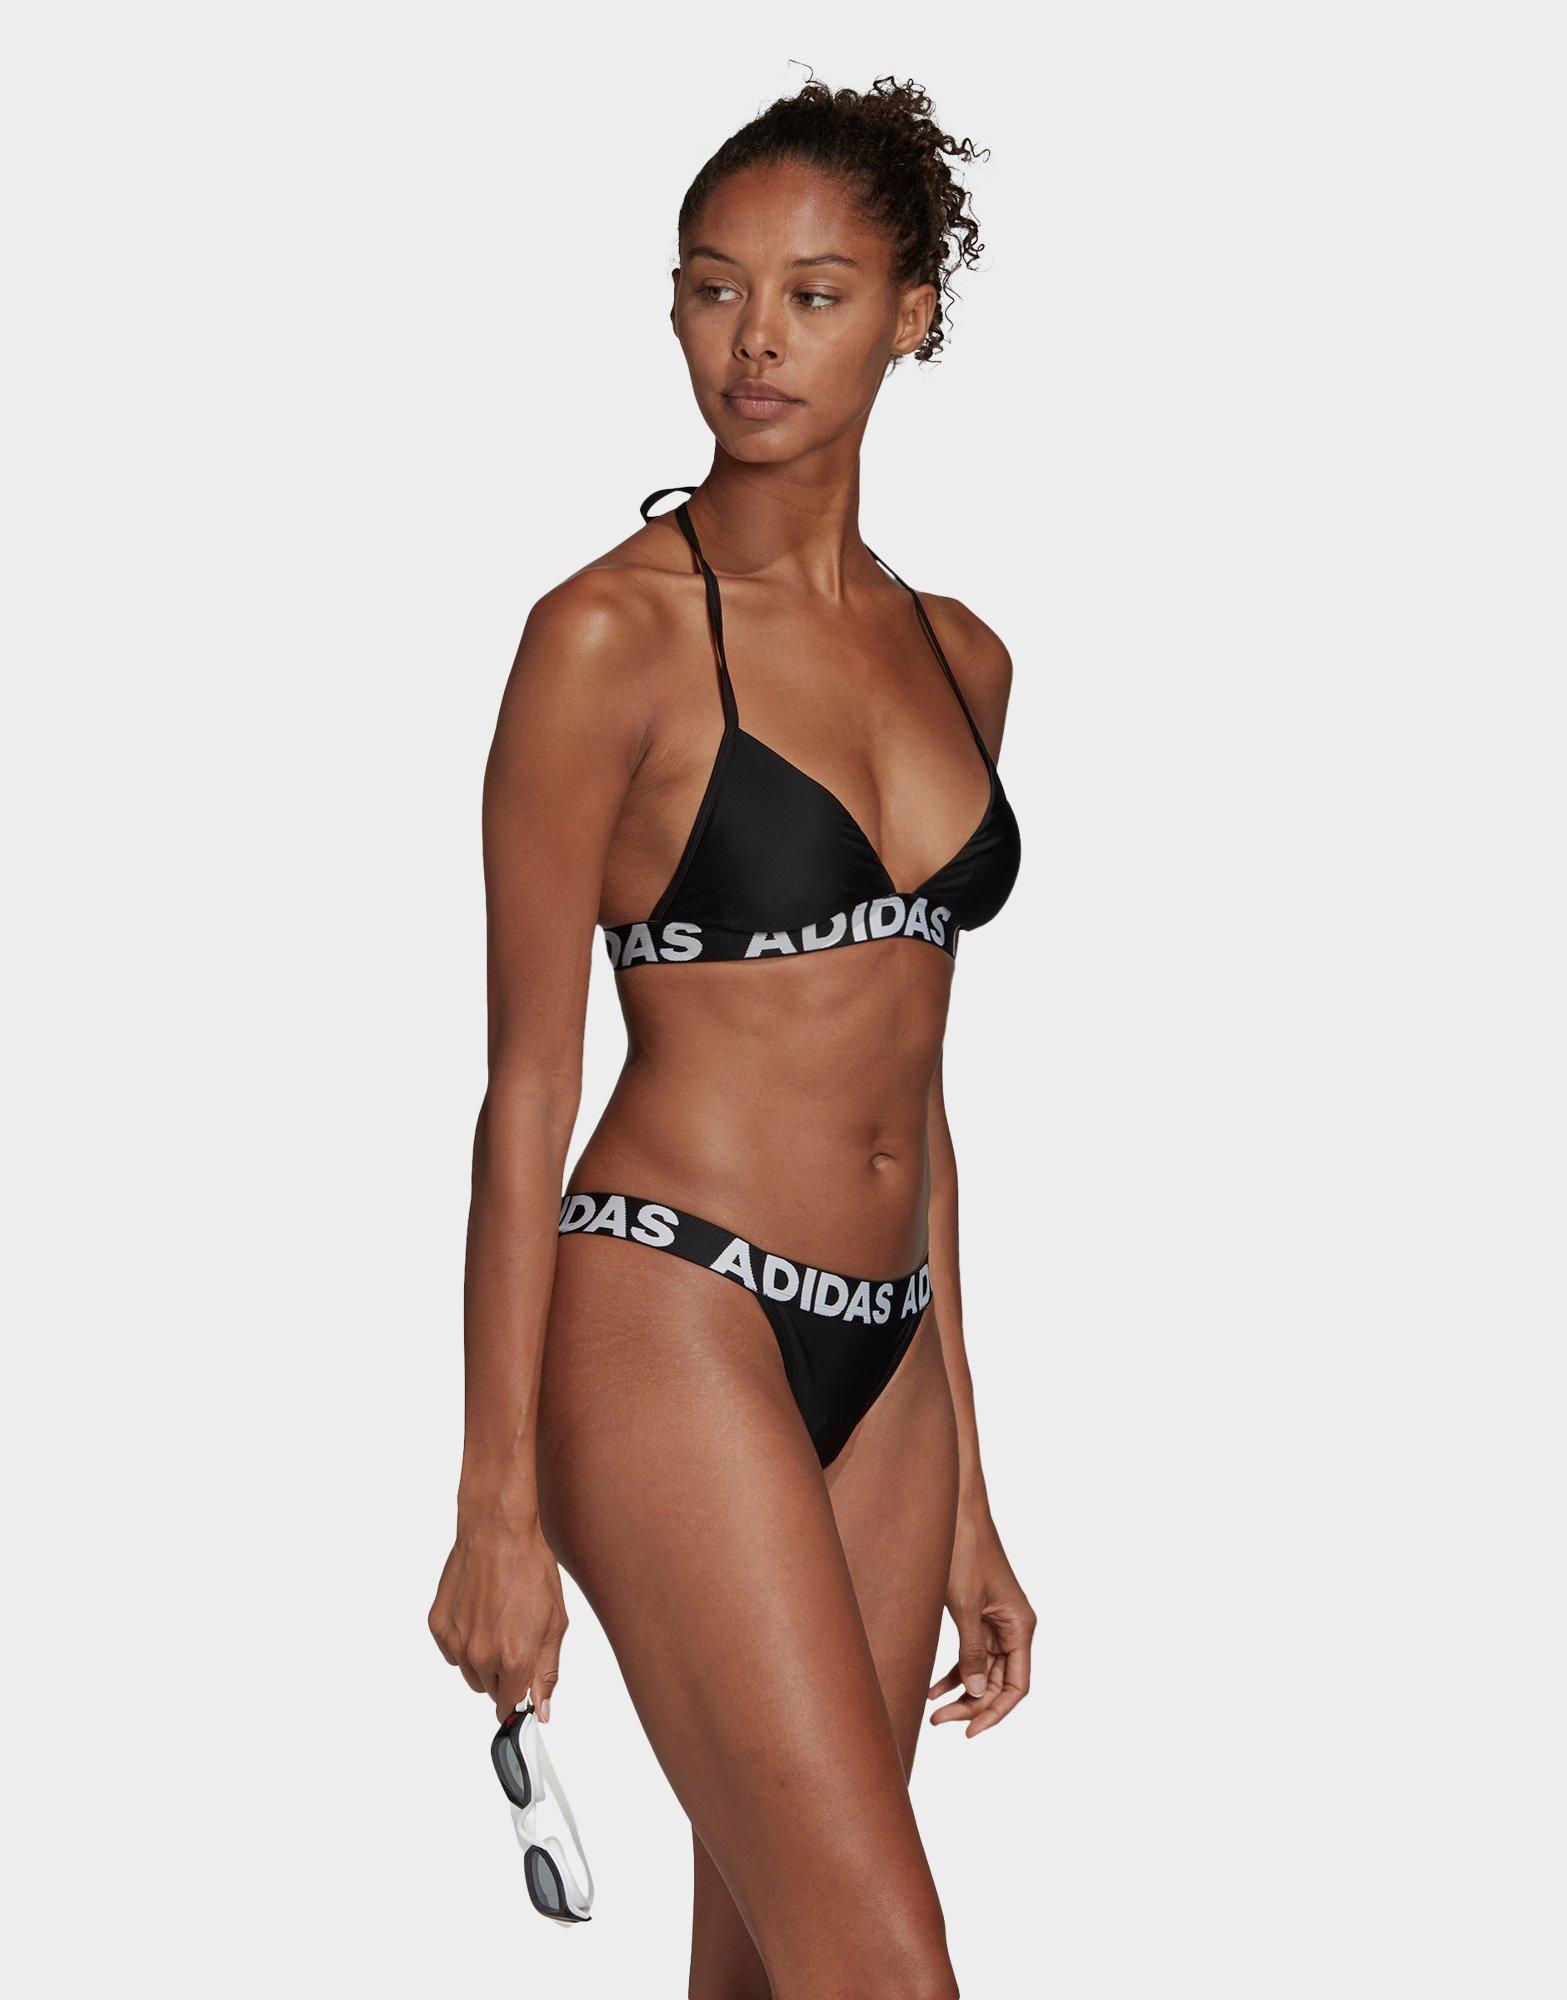 adidas bikini model